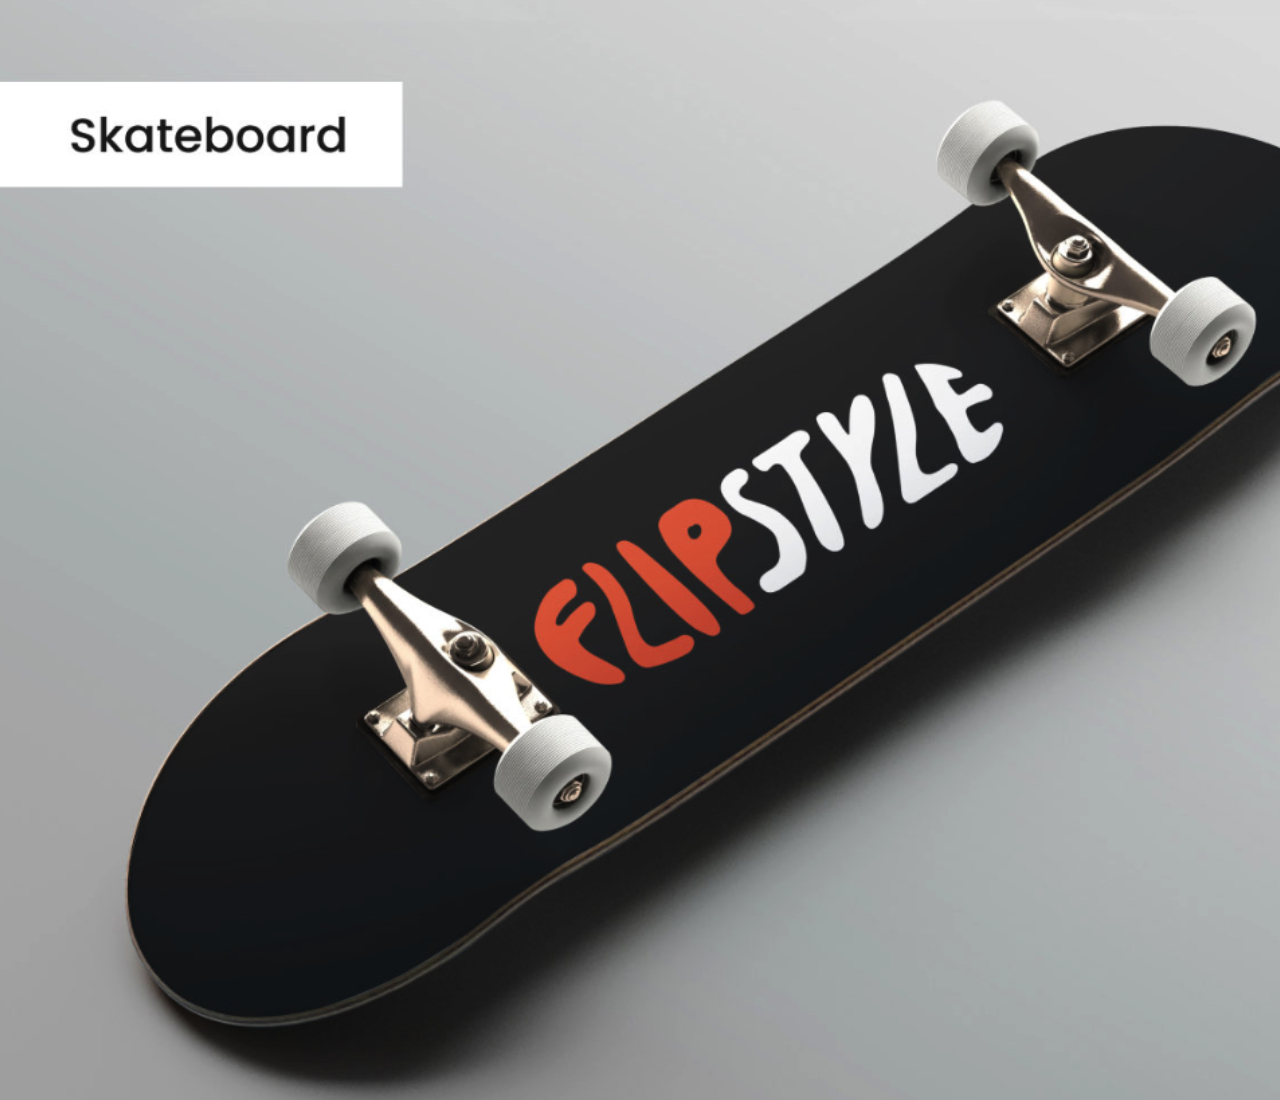 Hier sehen Sie ein Skateboard mit dem fiktiven Logo von Flipstyle.